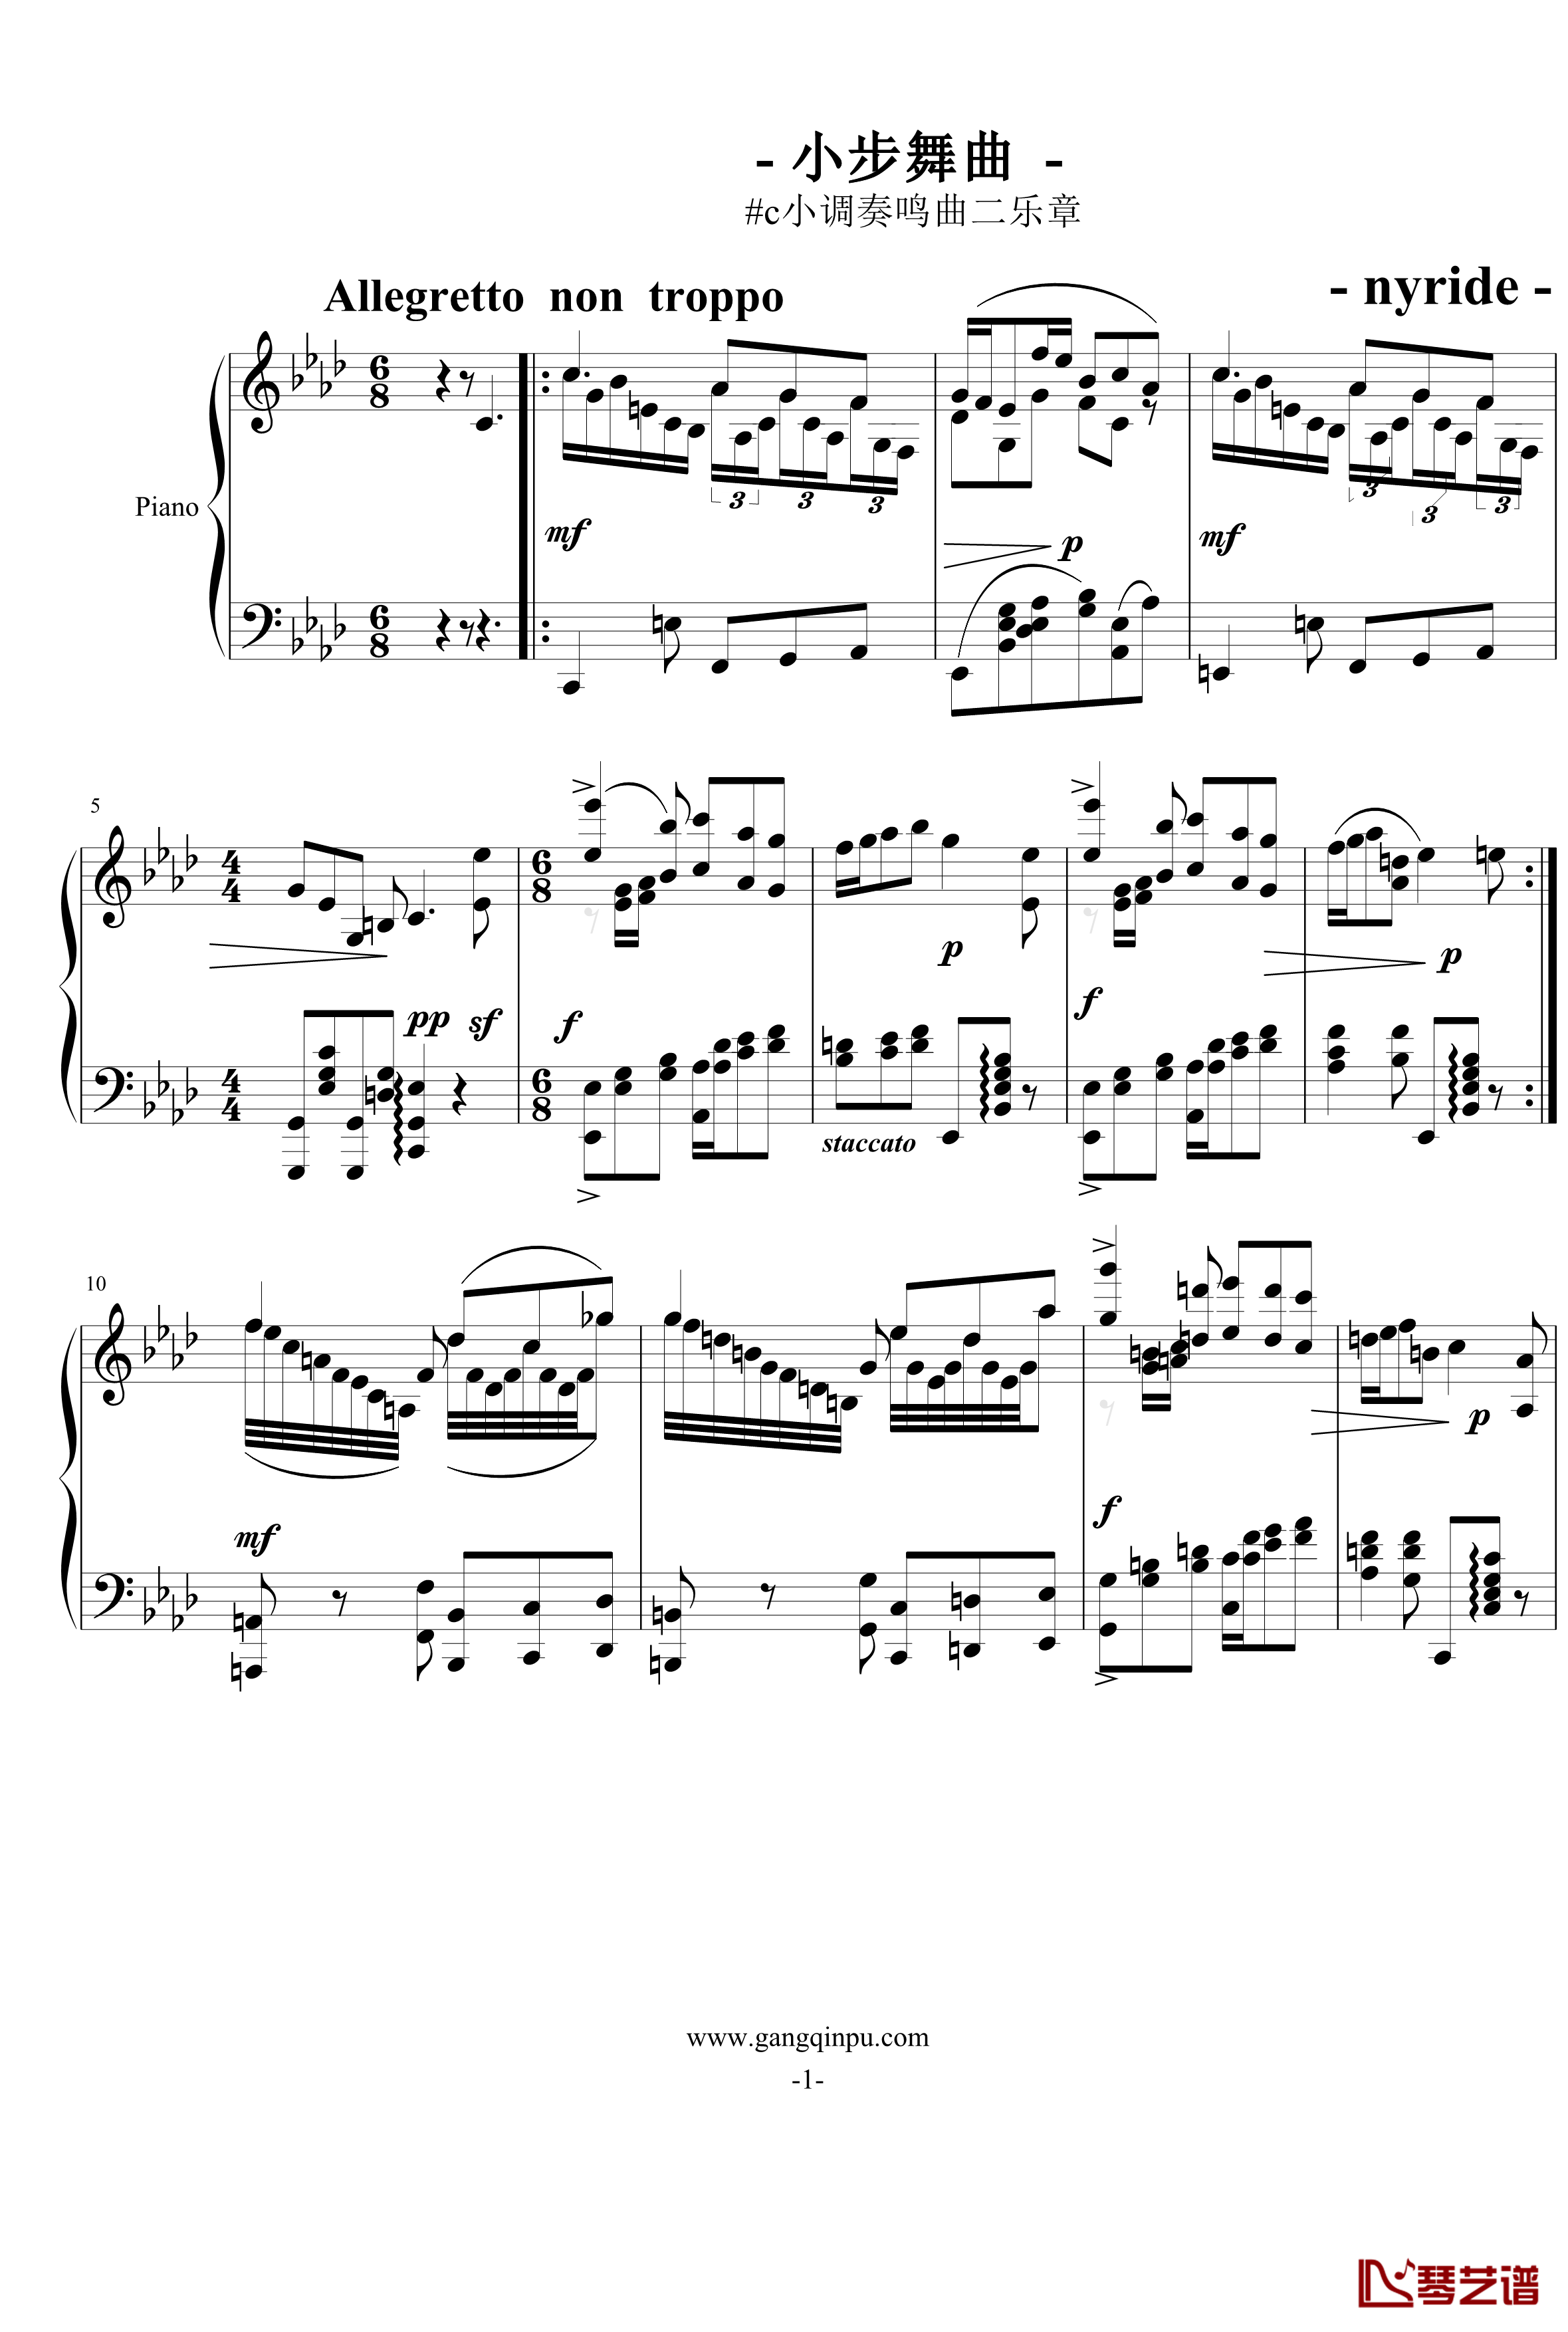 小步舞曲钢琴谱-烂大俗奏鸣曲2乐章-nyride1